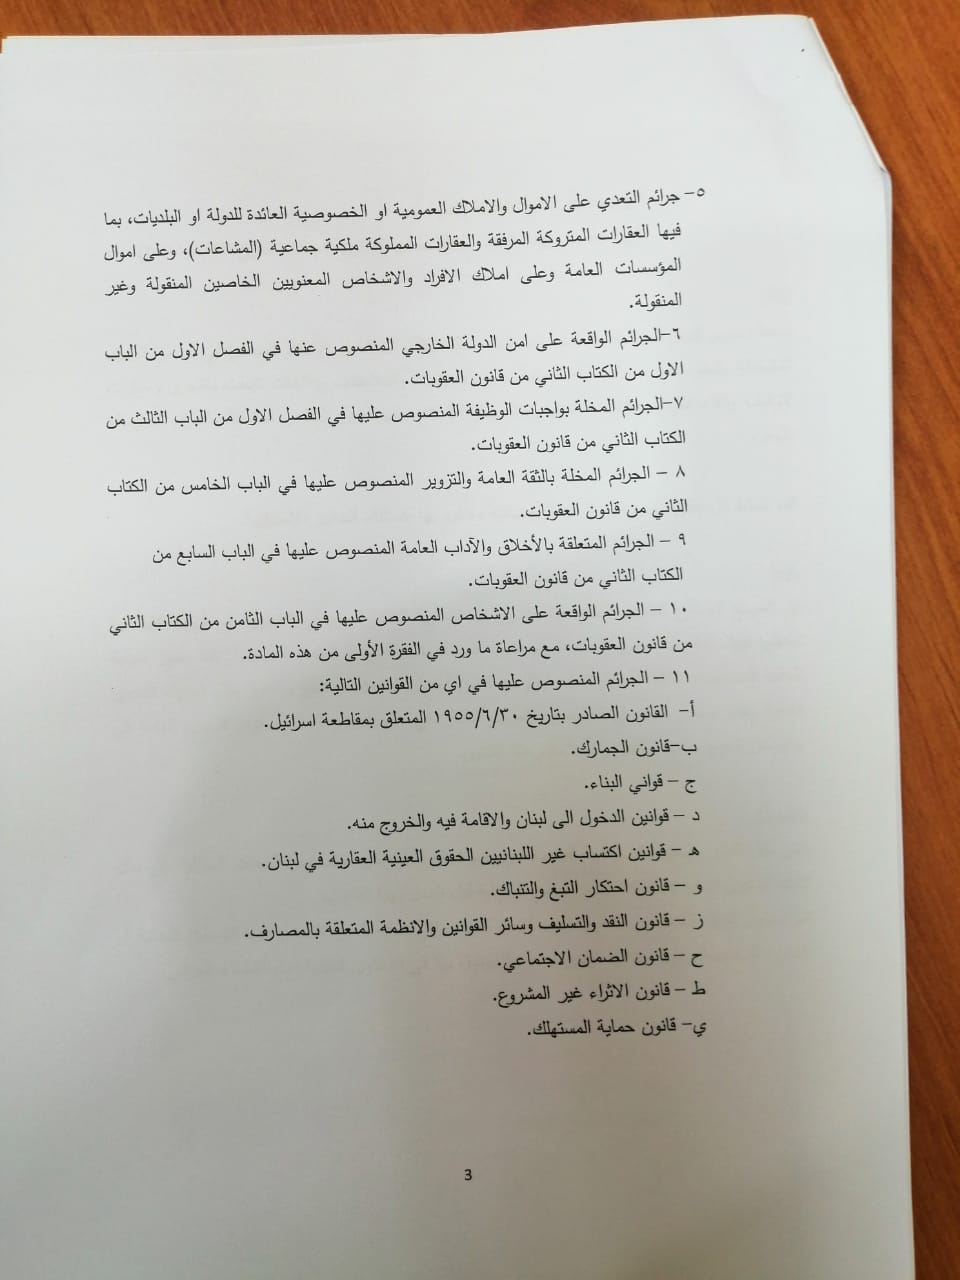 قانون العفو العام في لبنان